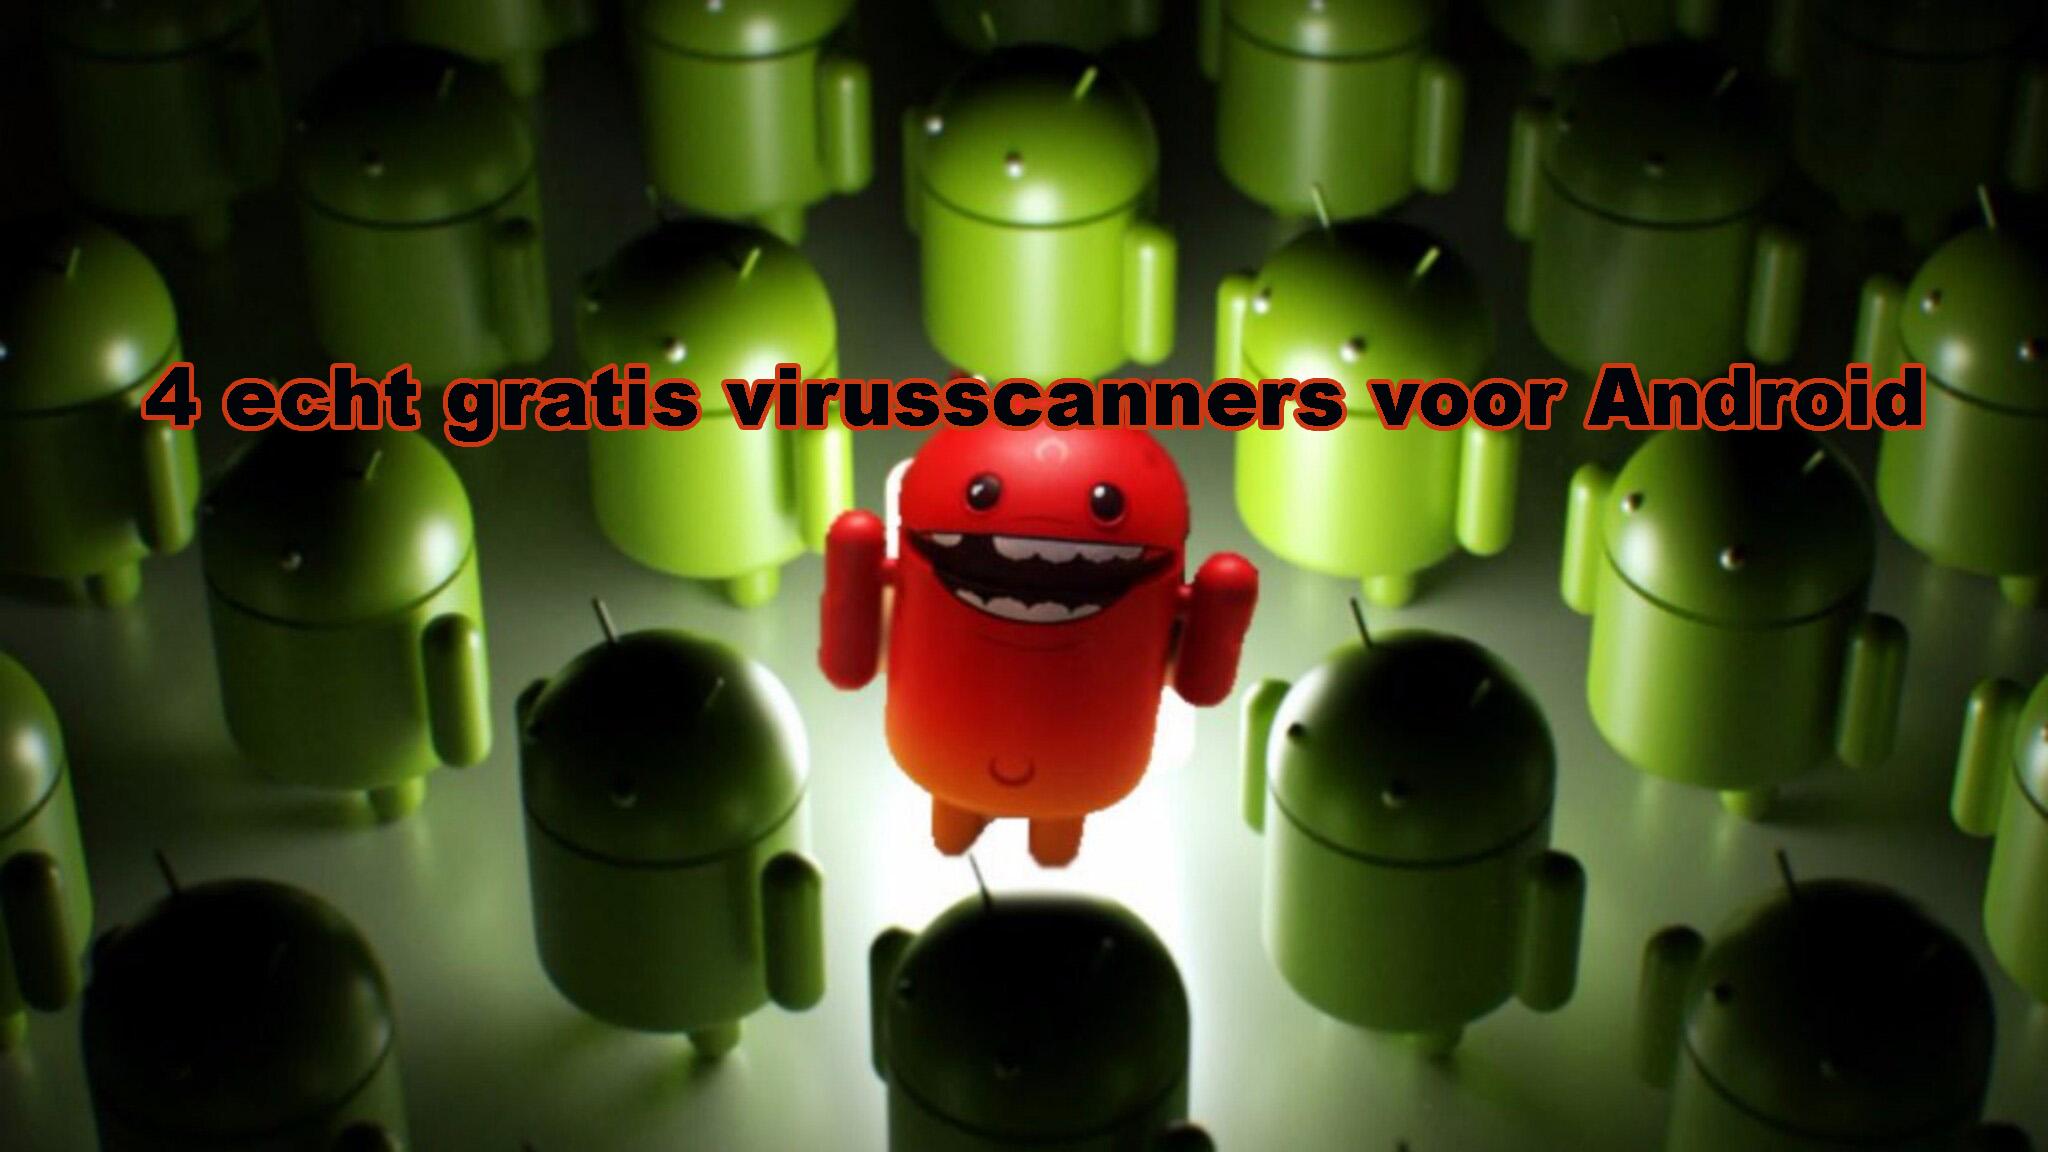 More information about "Hou je smartphone veilig met deze vier gratis virusscanners voor Android"